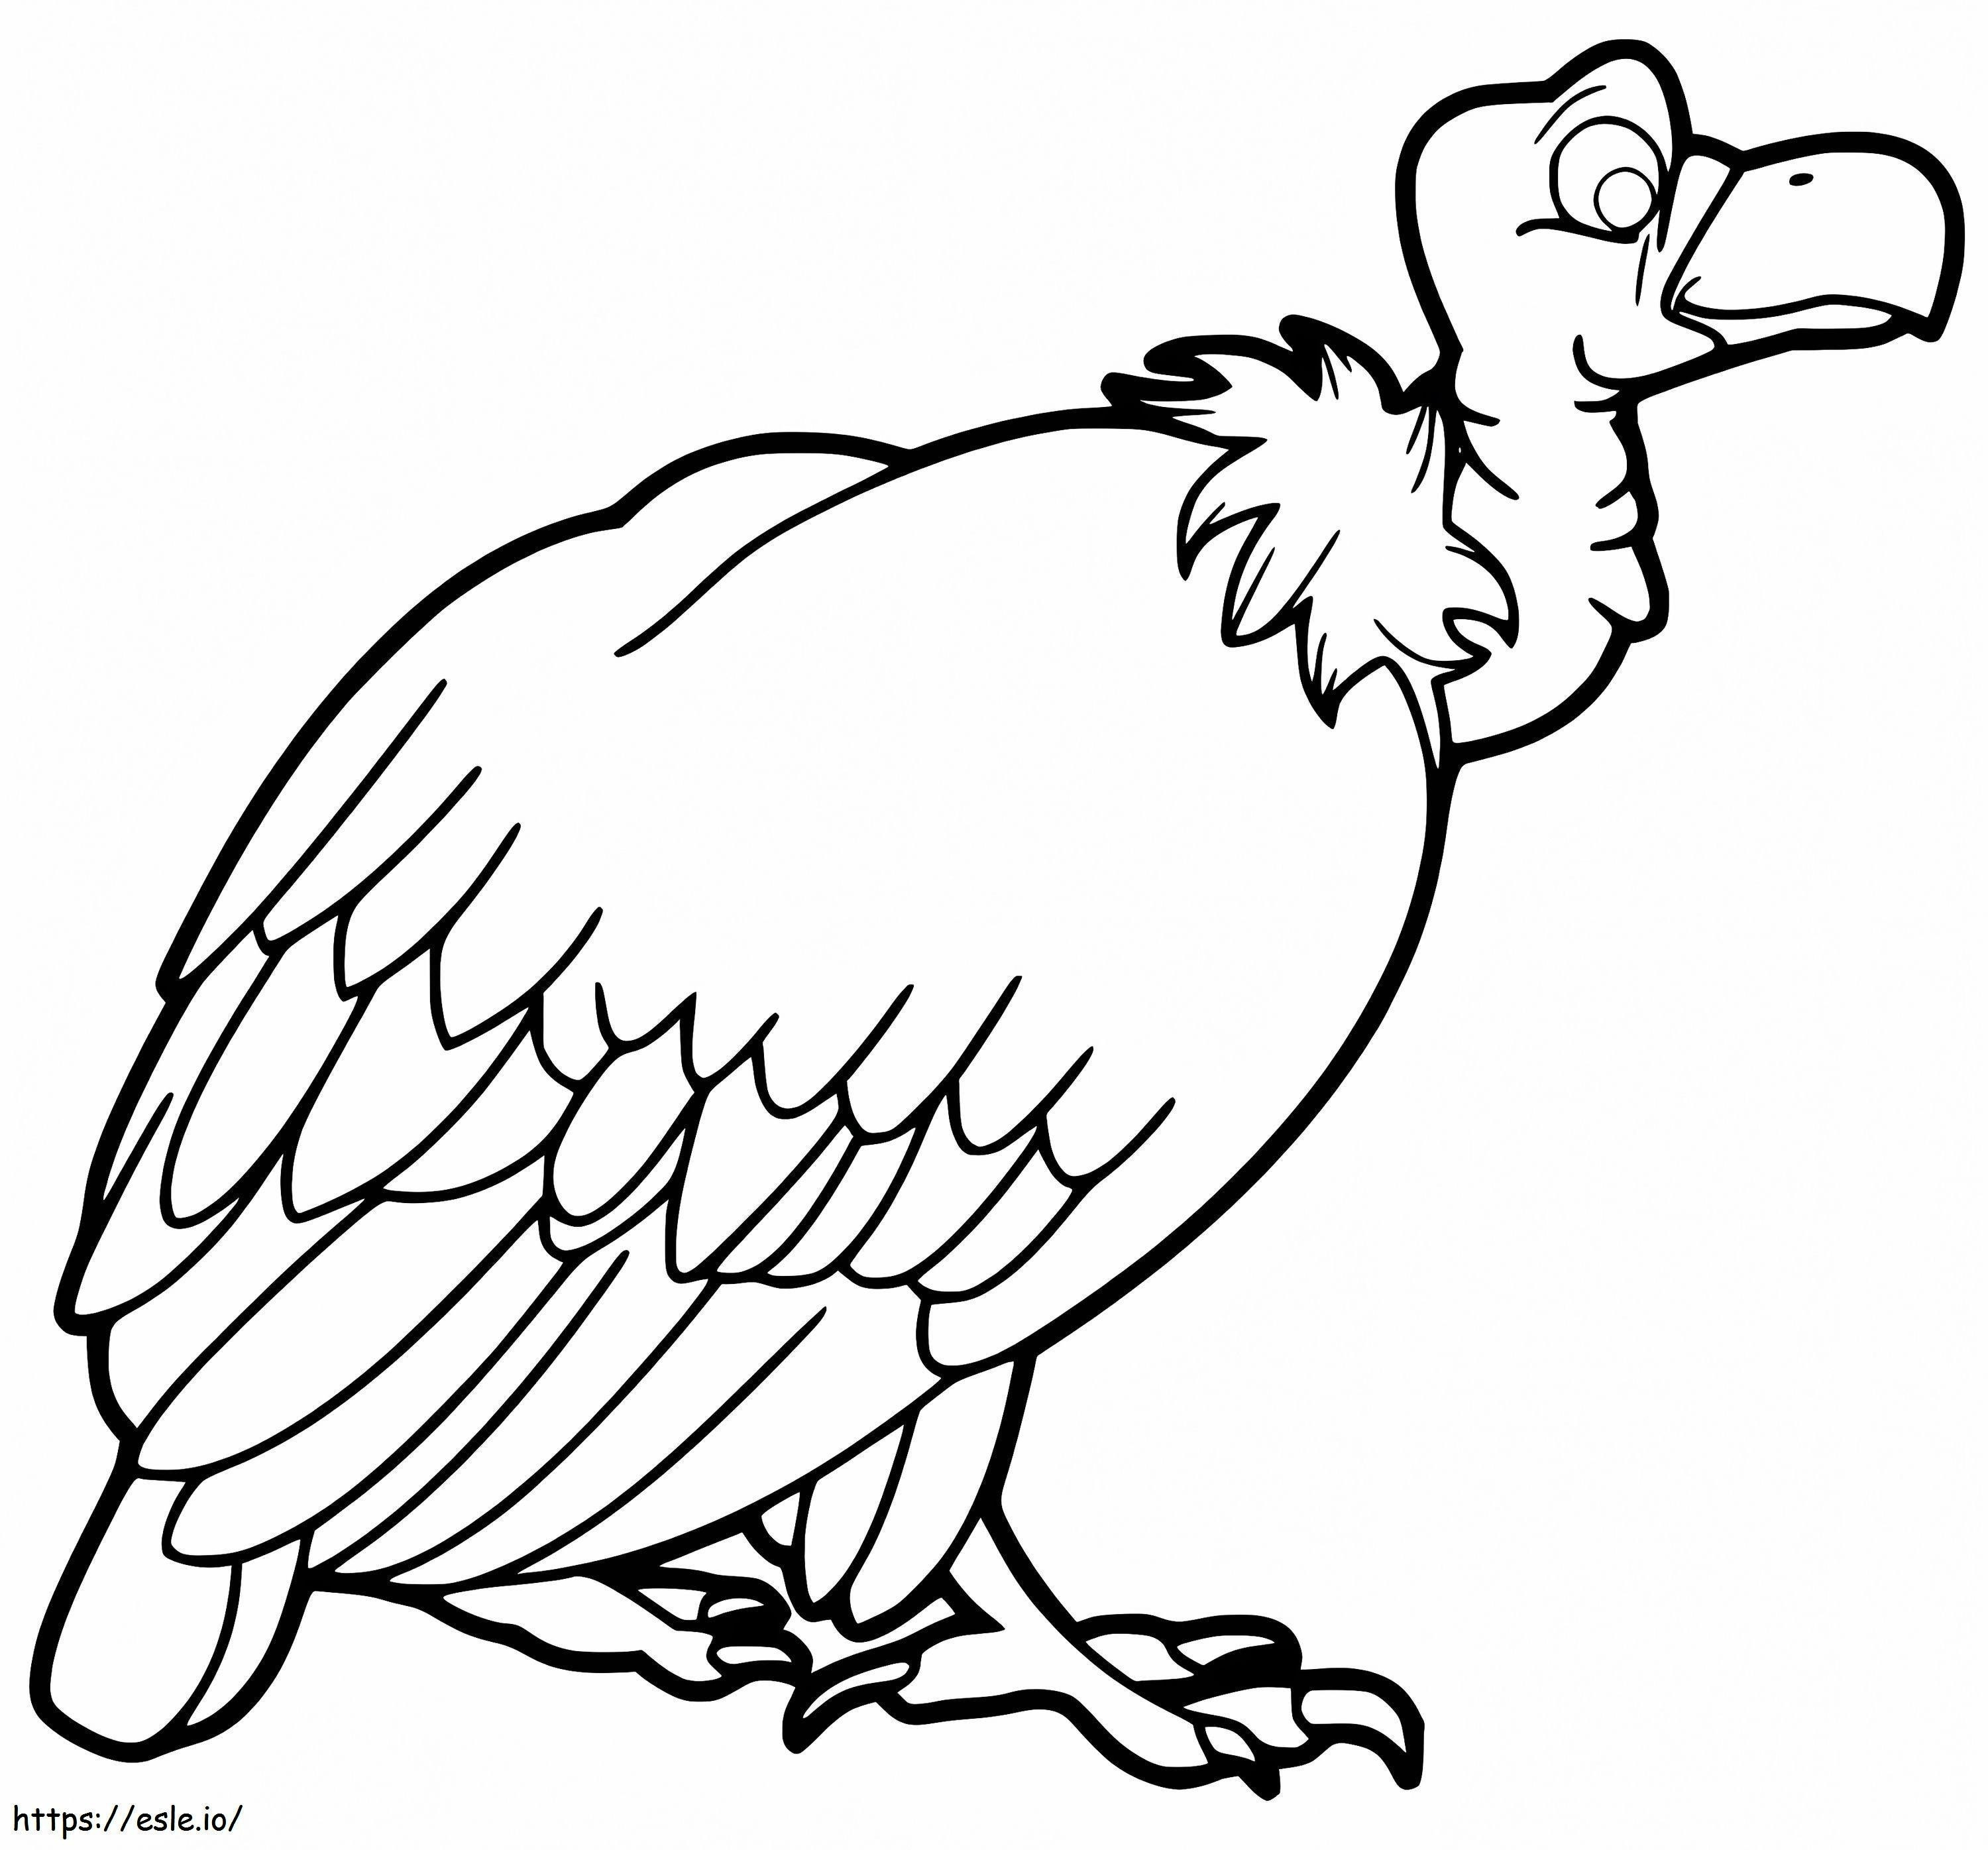 Avvoltoio stampabile da colorare